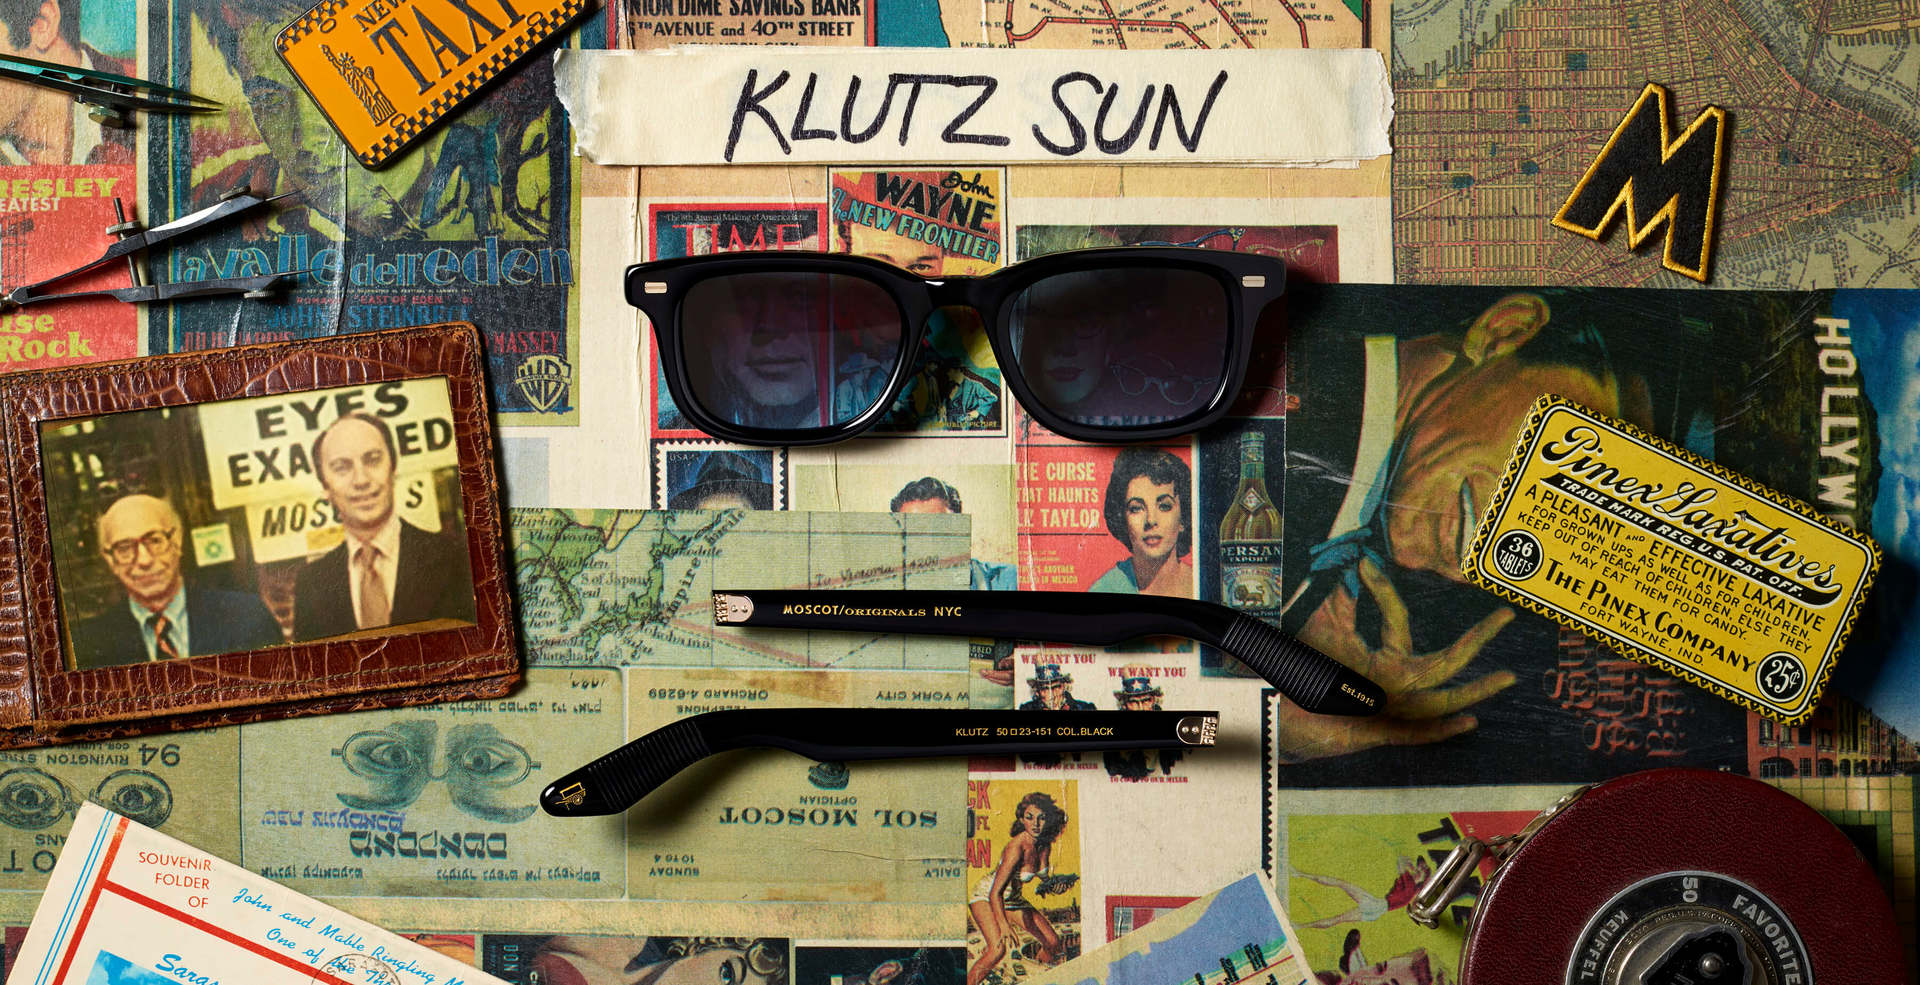 The KLUTZ SUN